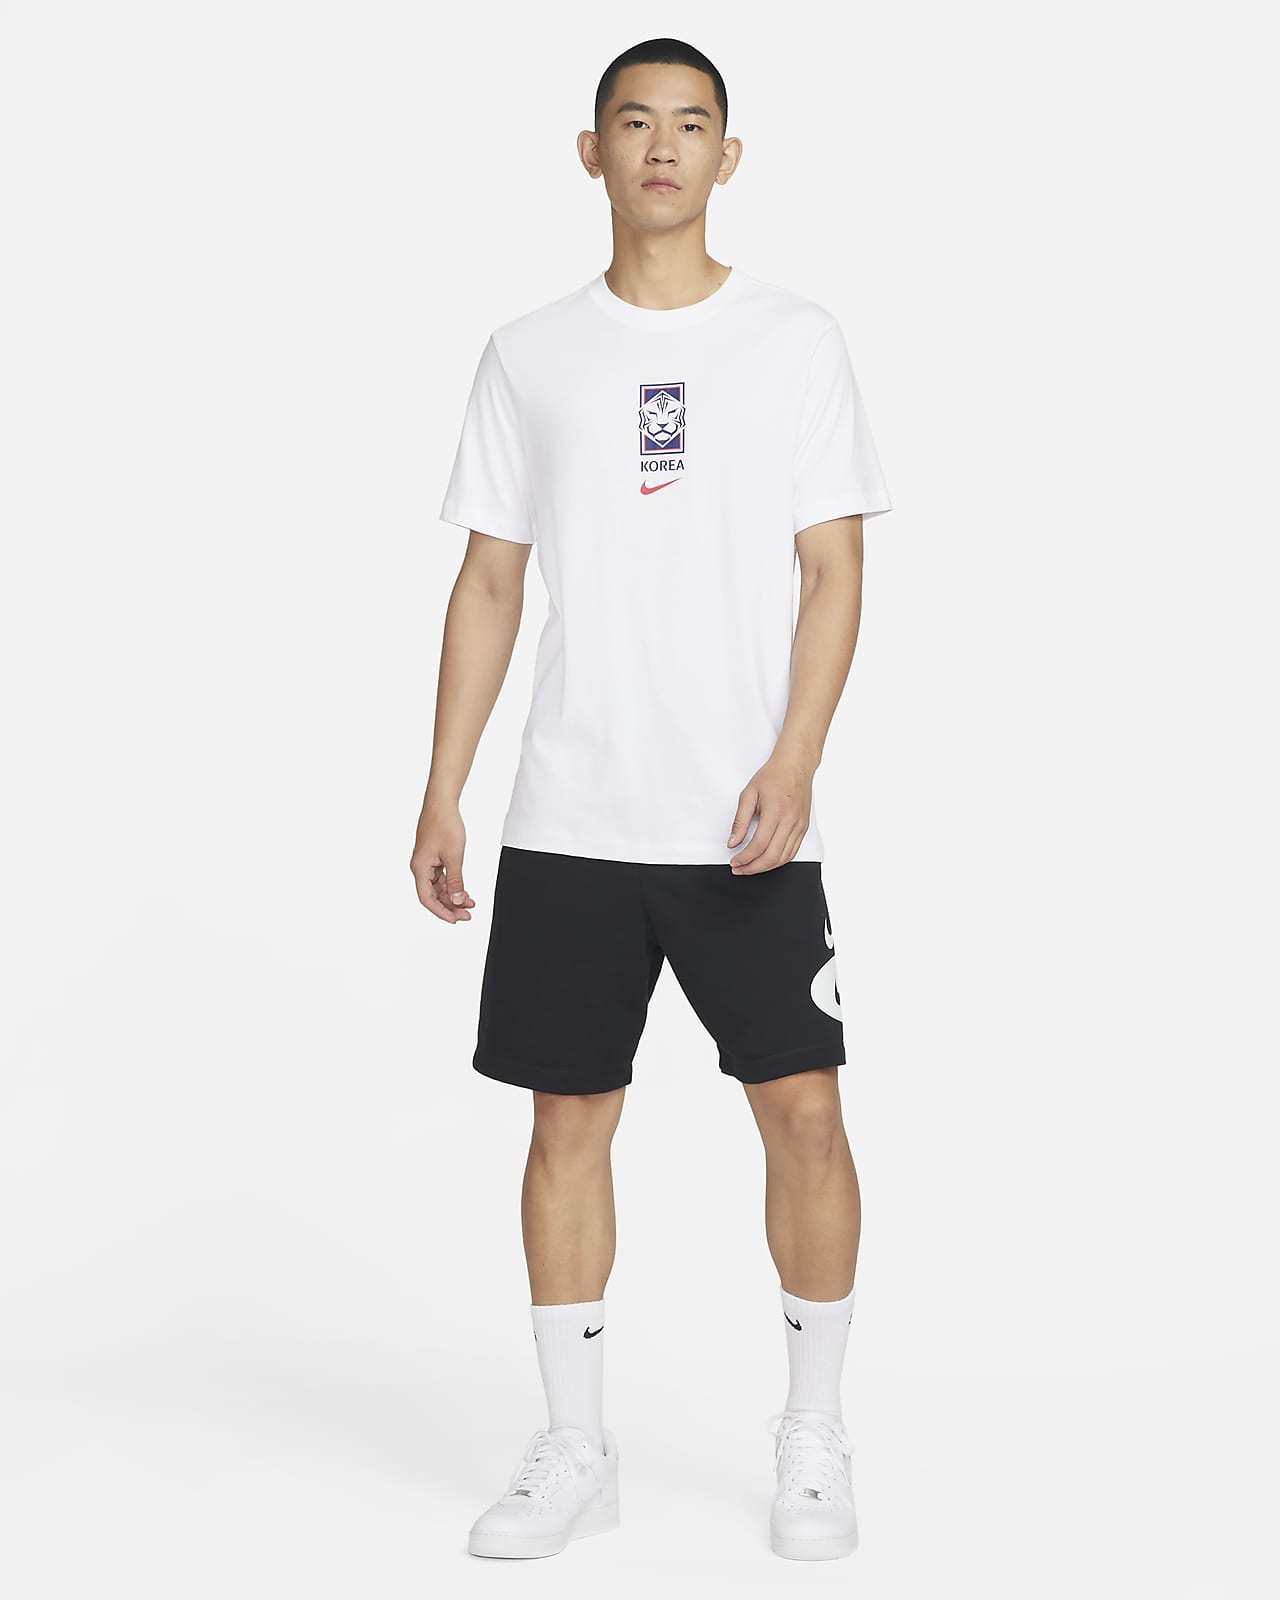 Korea Men's Nike T-Shirt. Nike SG